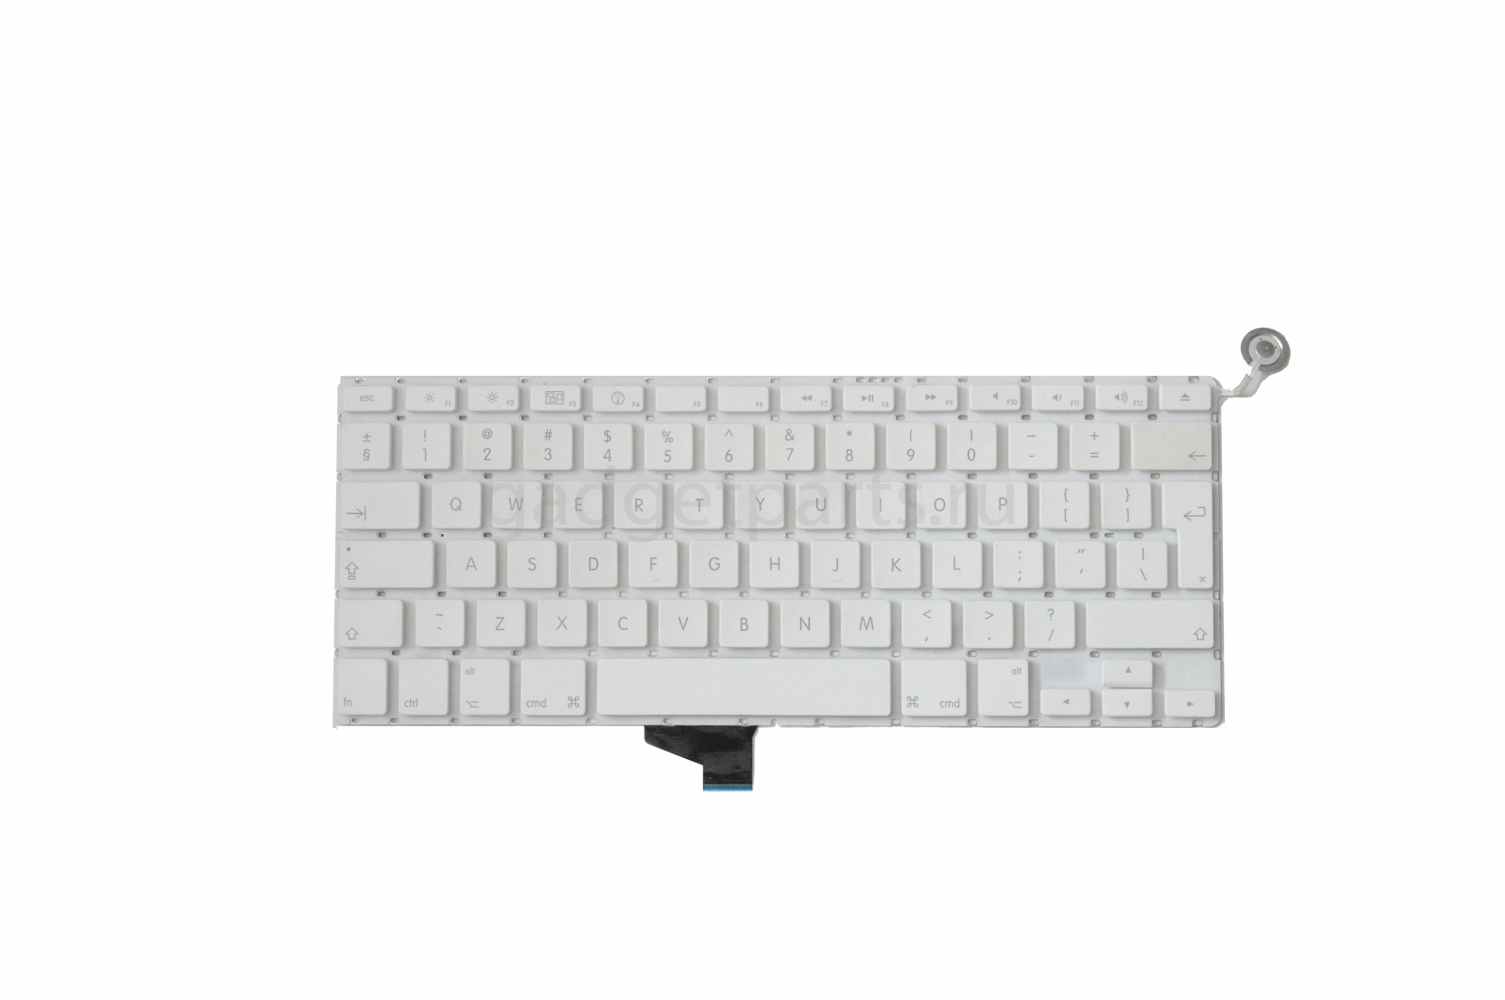 Клавиатура MacBook Unibody 13 A1342 2009-2010 года